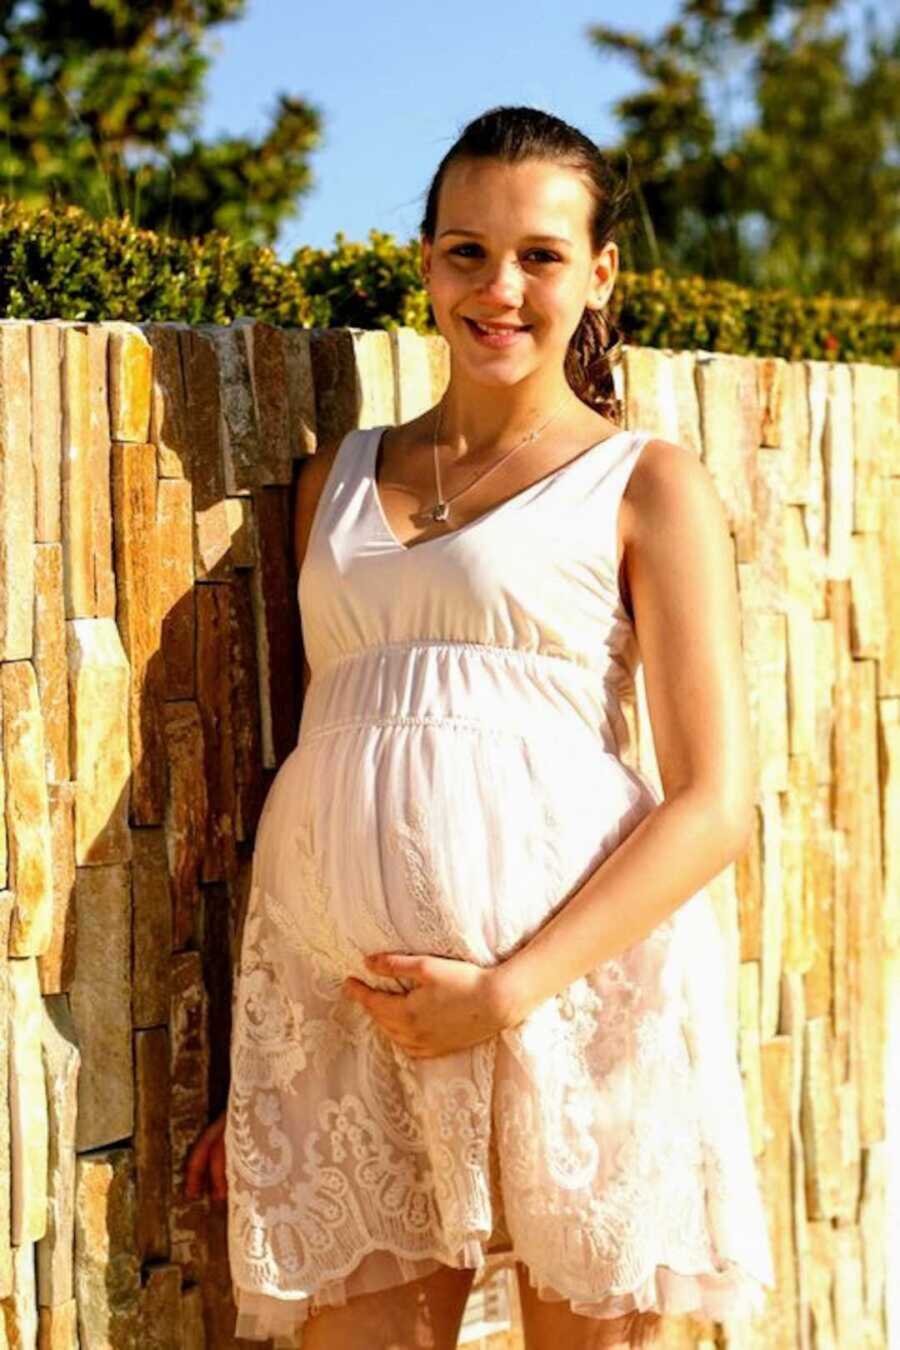 Teen mom in white sundress holding pregnant belly